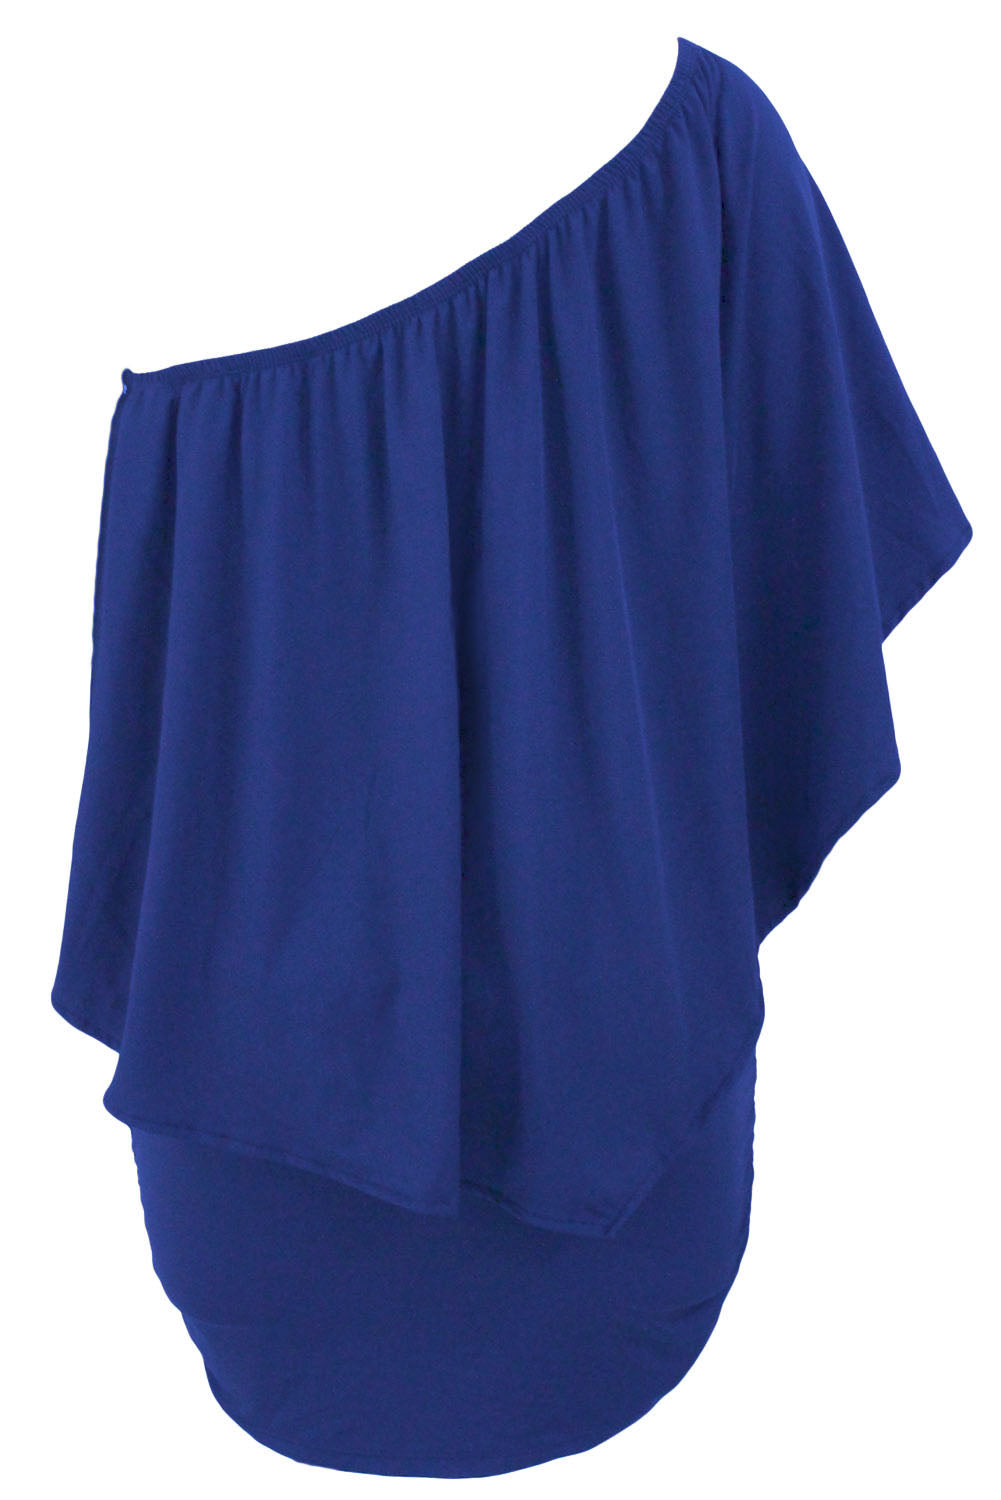 Modra mini pončo obleka z več plastemi